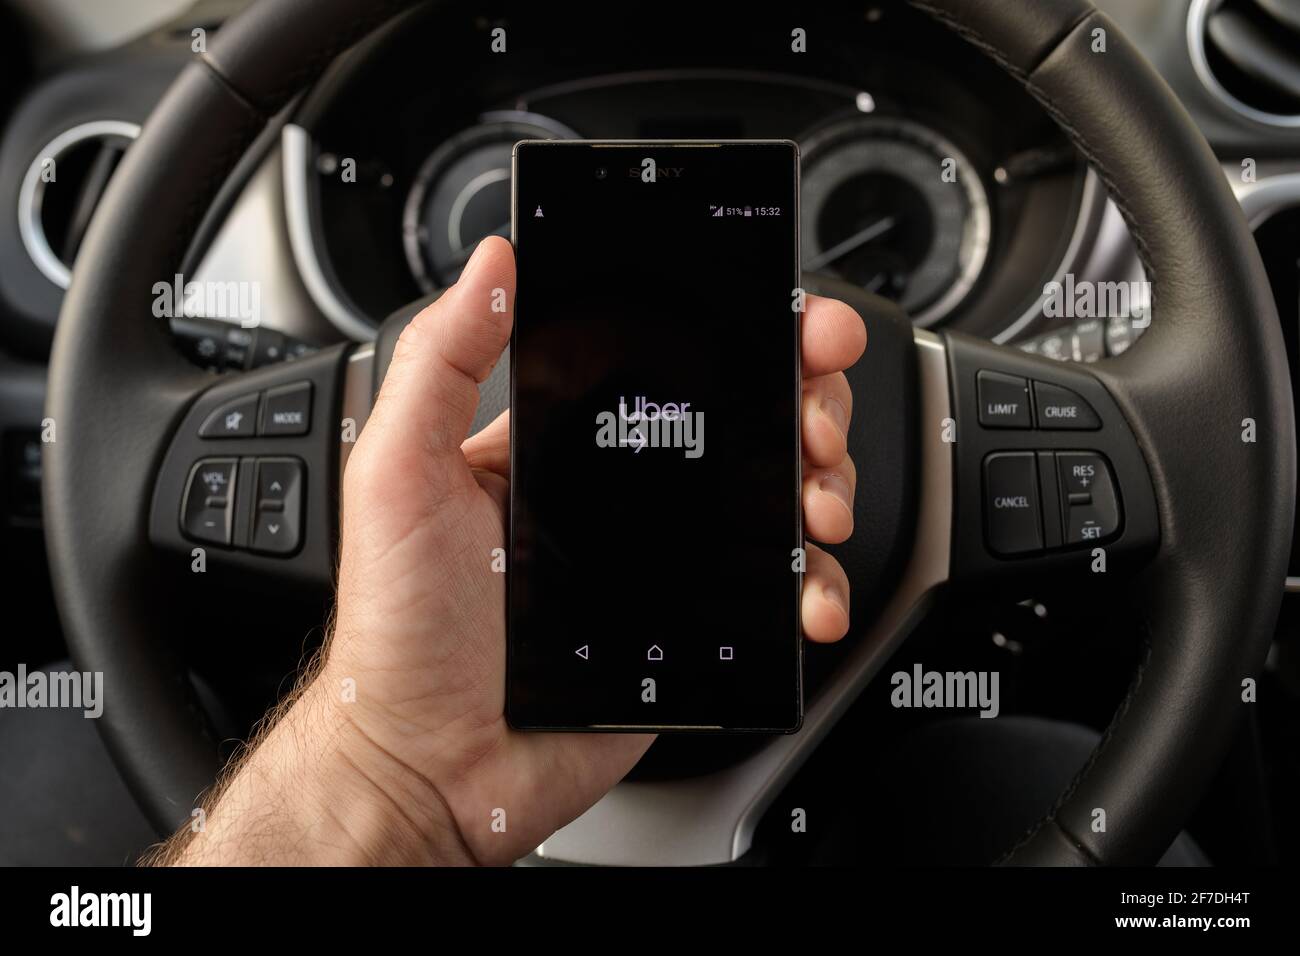 ZRENJANIN, SERBIA - 2 APRILE 2021: Smartphone con tenuta a mano maschile con schermata di applicazione Uber driver in auto. Foto Stock